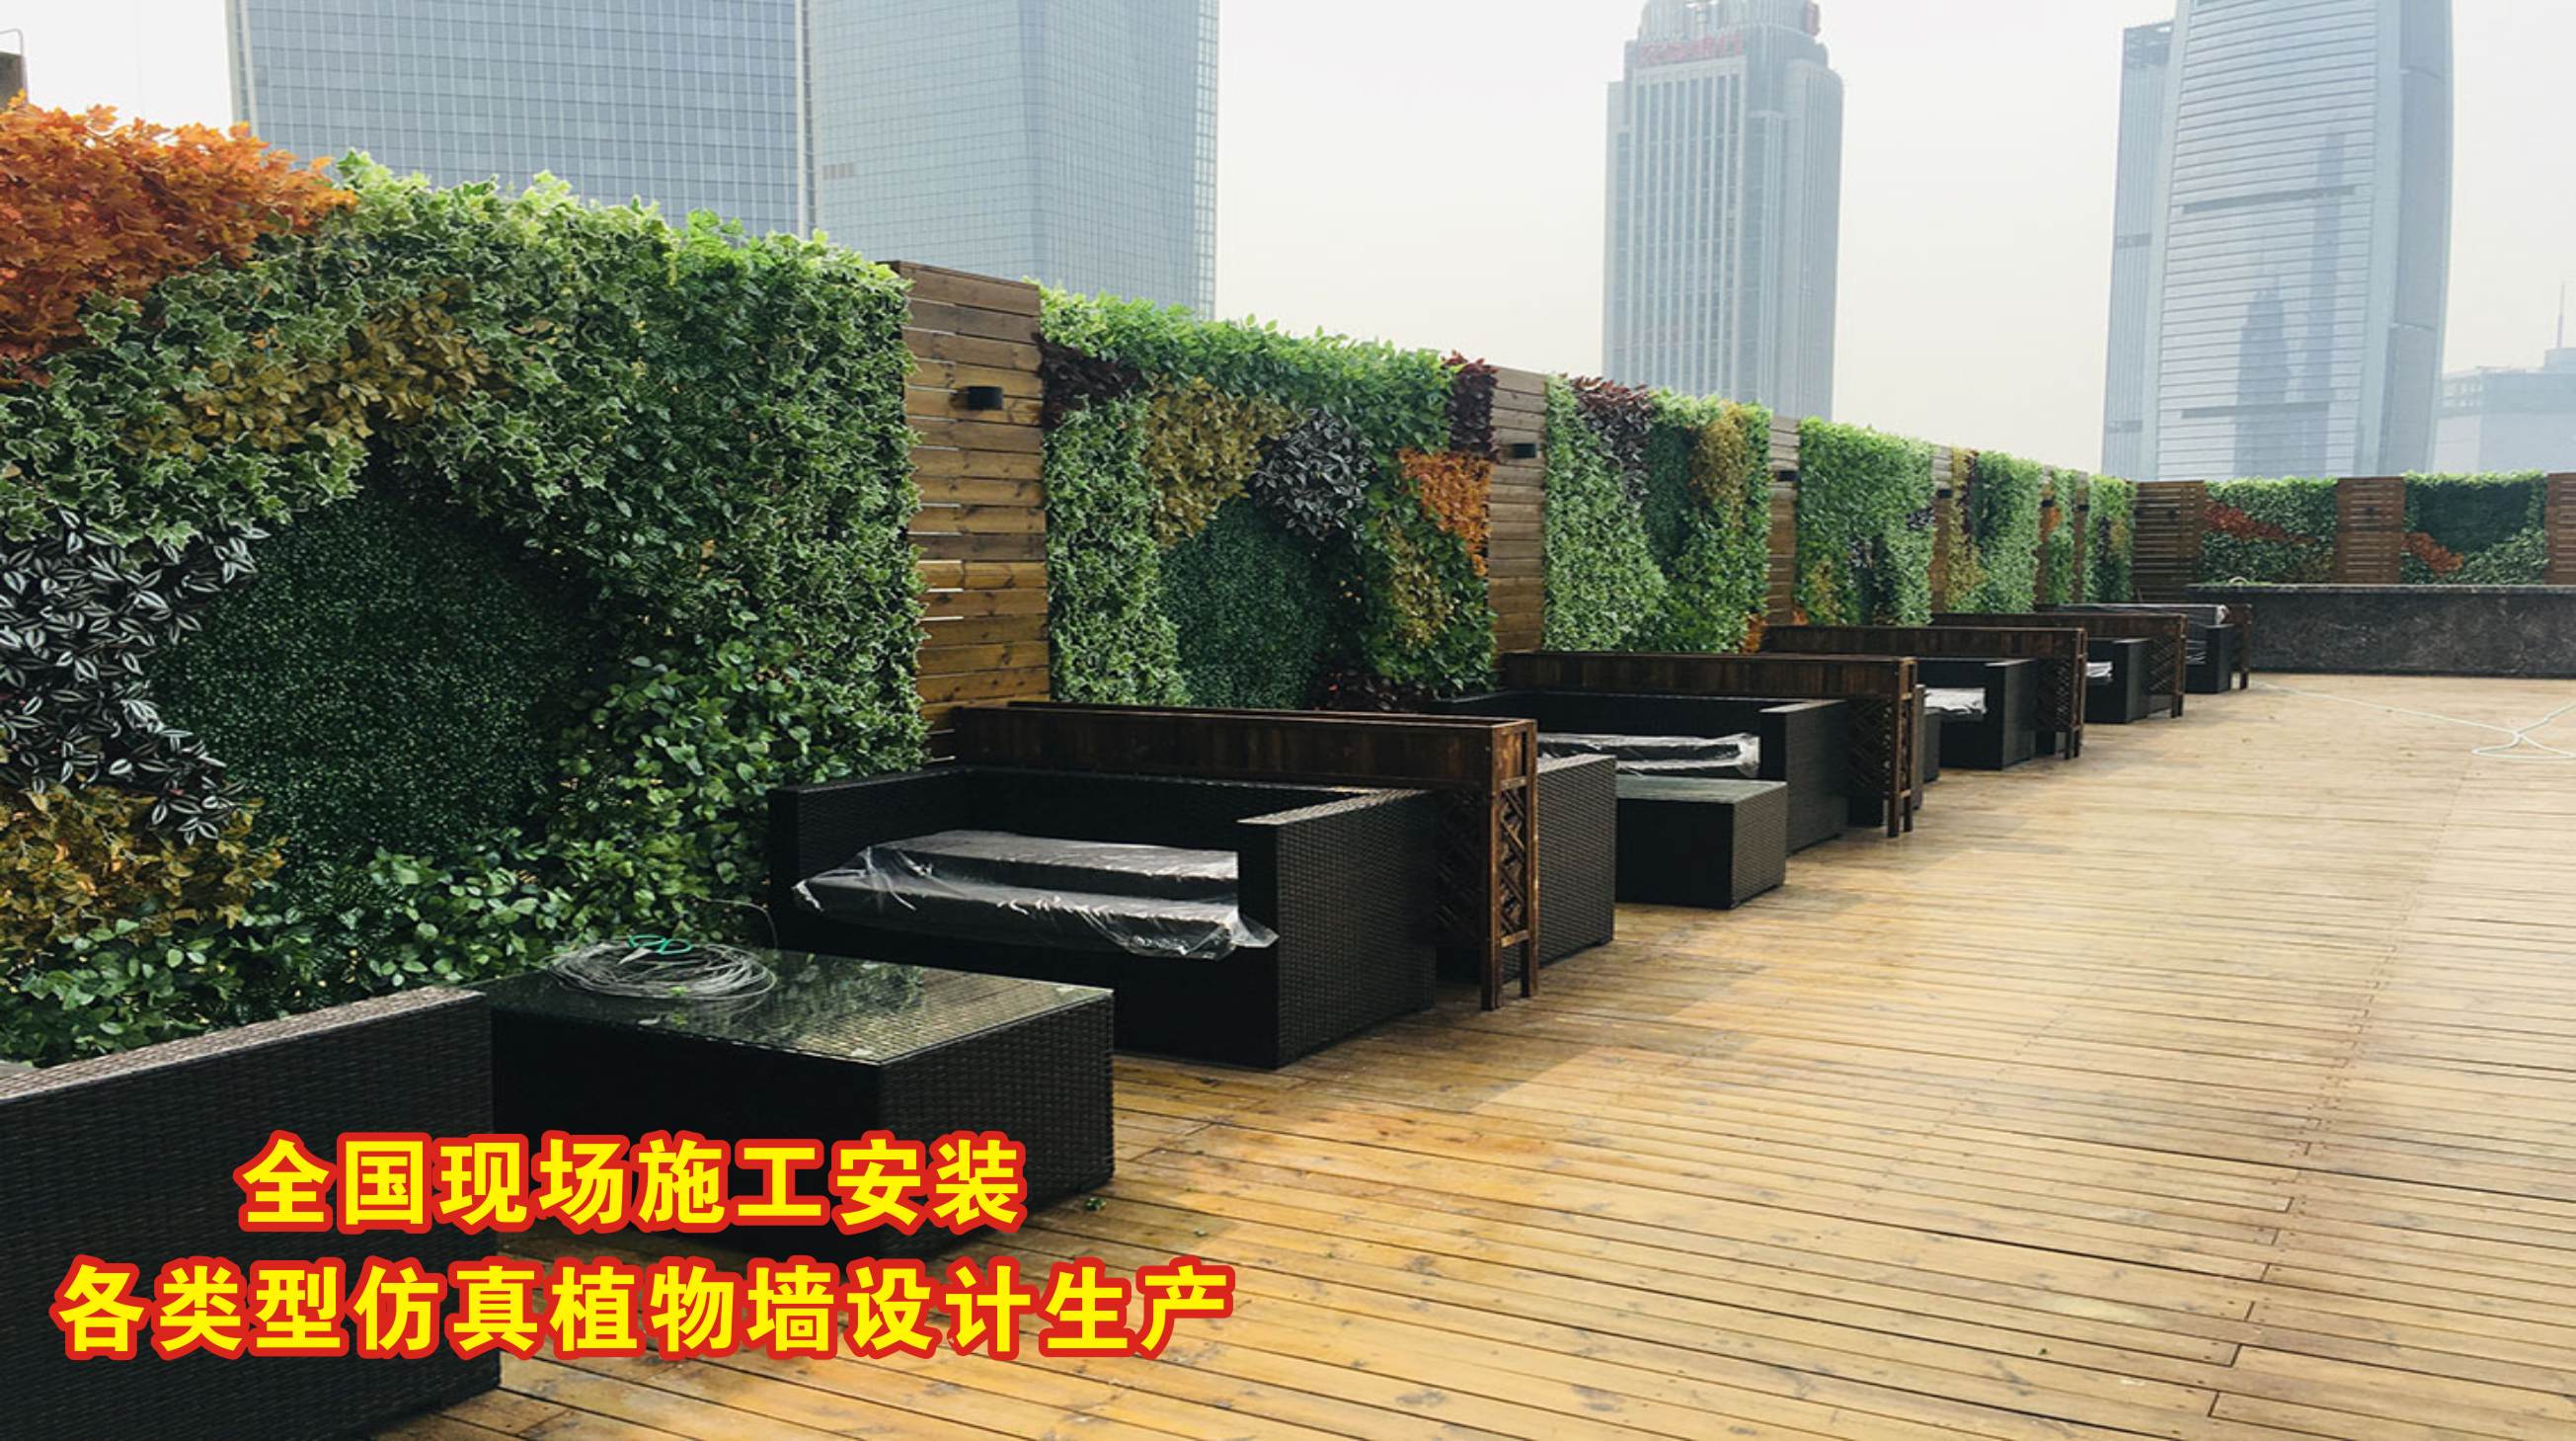 优质仿真绿植墙/墙体植物种类丰富,防晒/阻燃，按需设计生产施工约300.00元